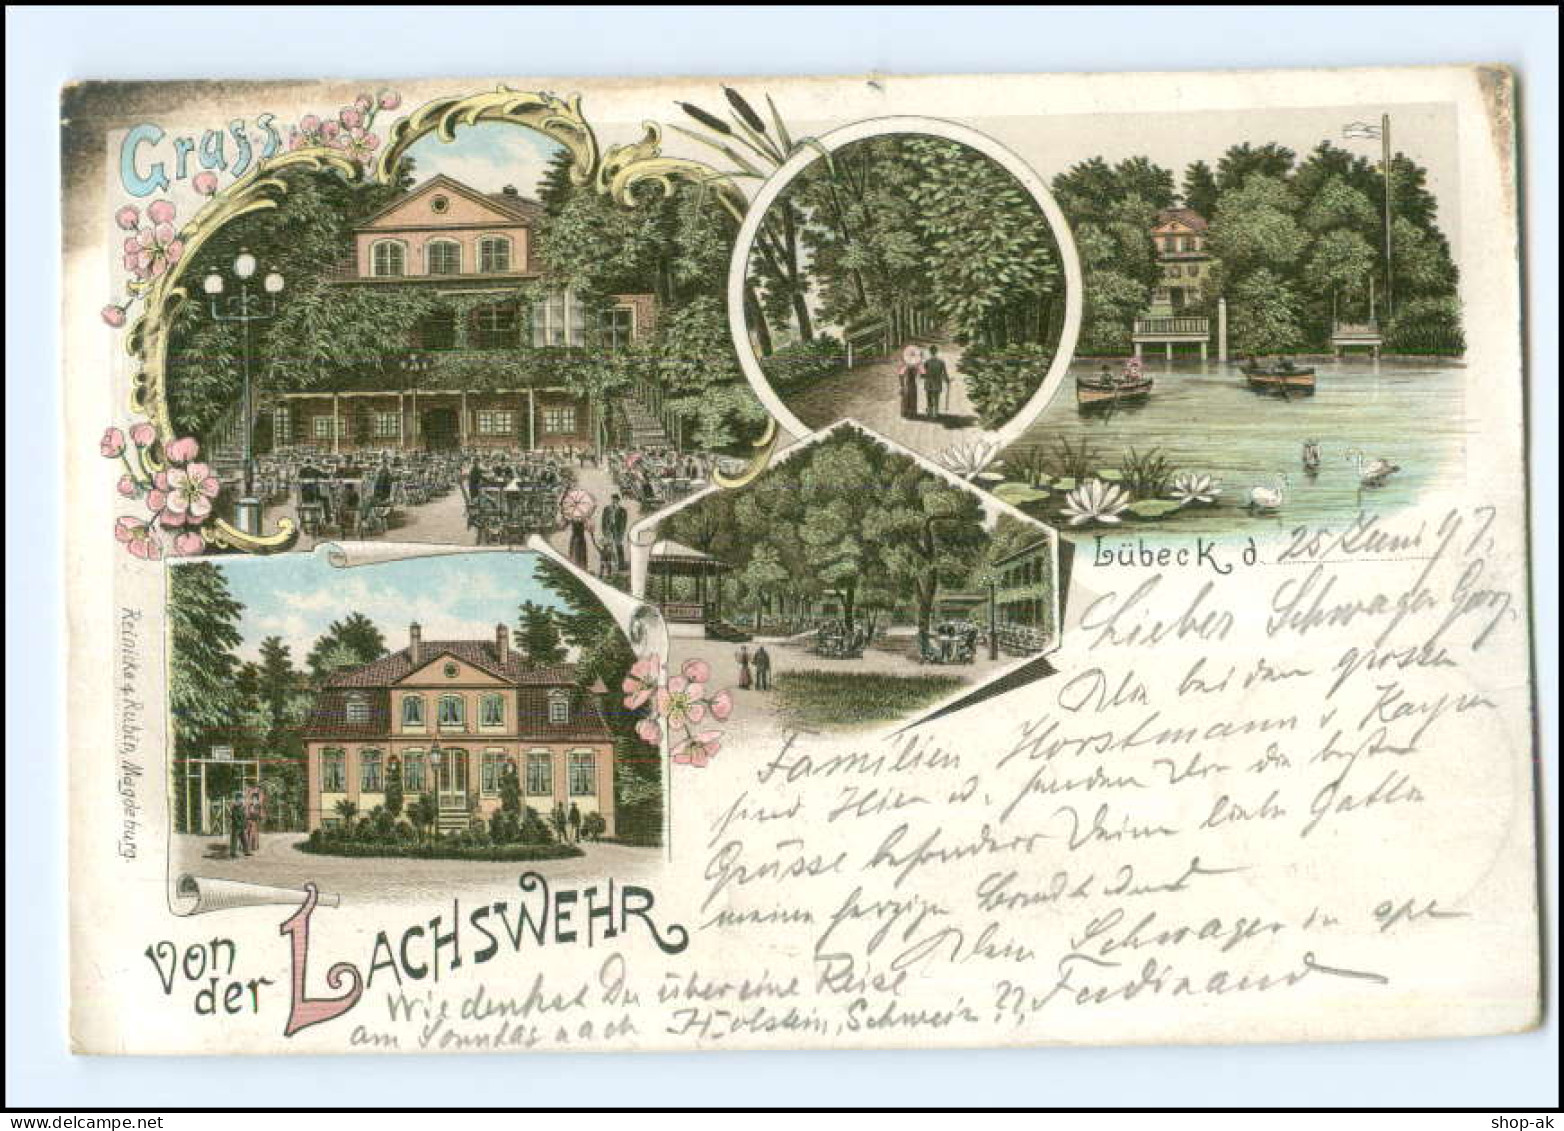 V1448/ Lübeck  Gruß Von Der Lachswehr  Litho AK 1897 - Luebeck-Travemuende